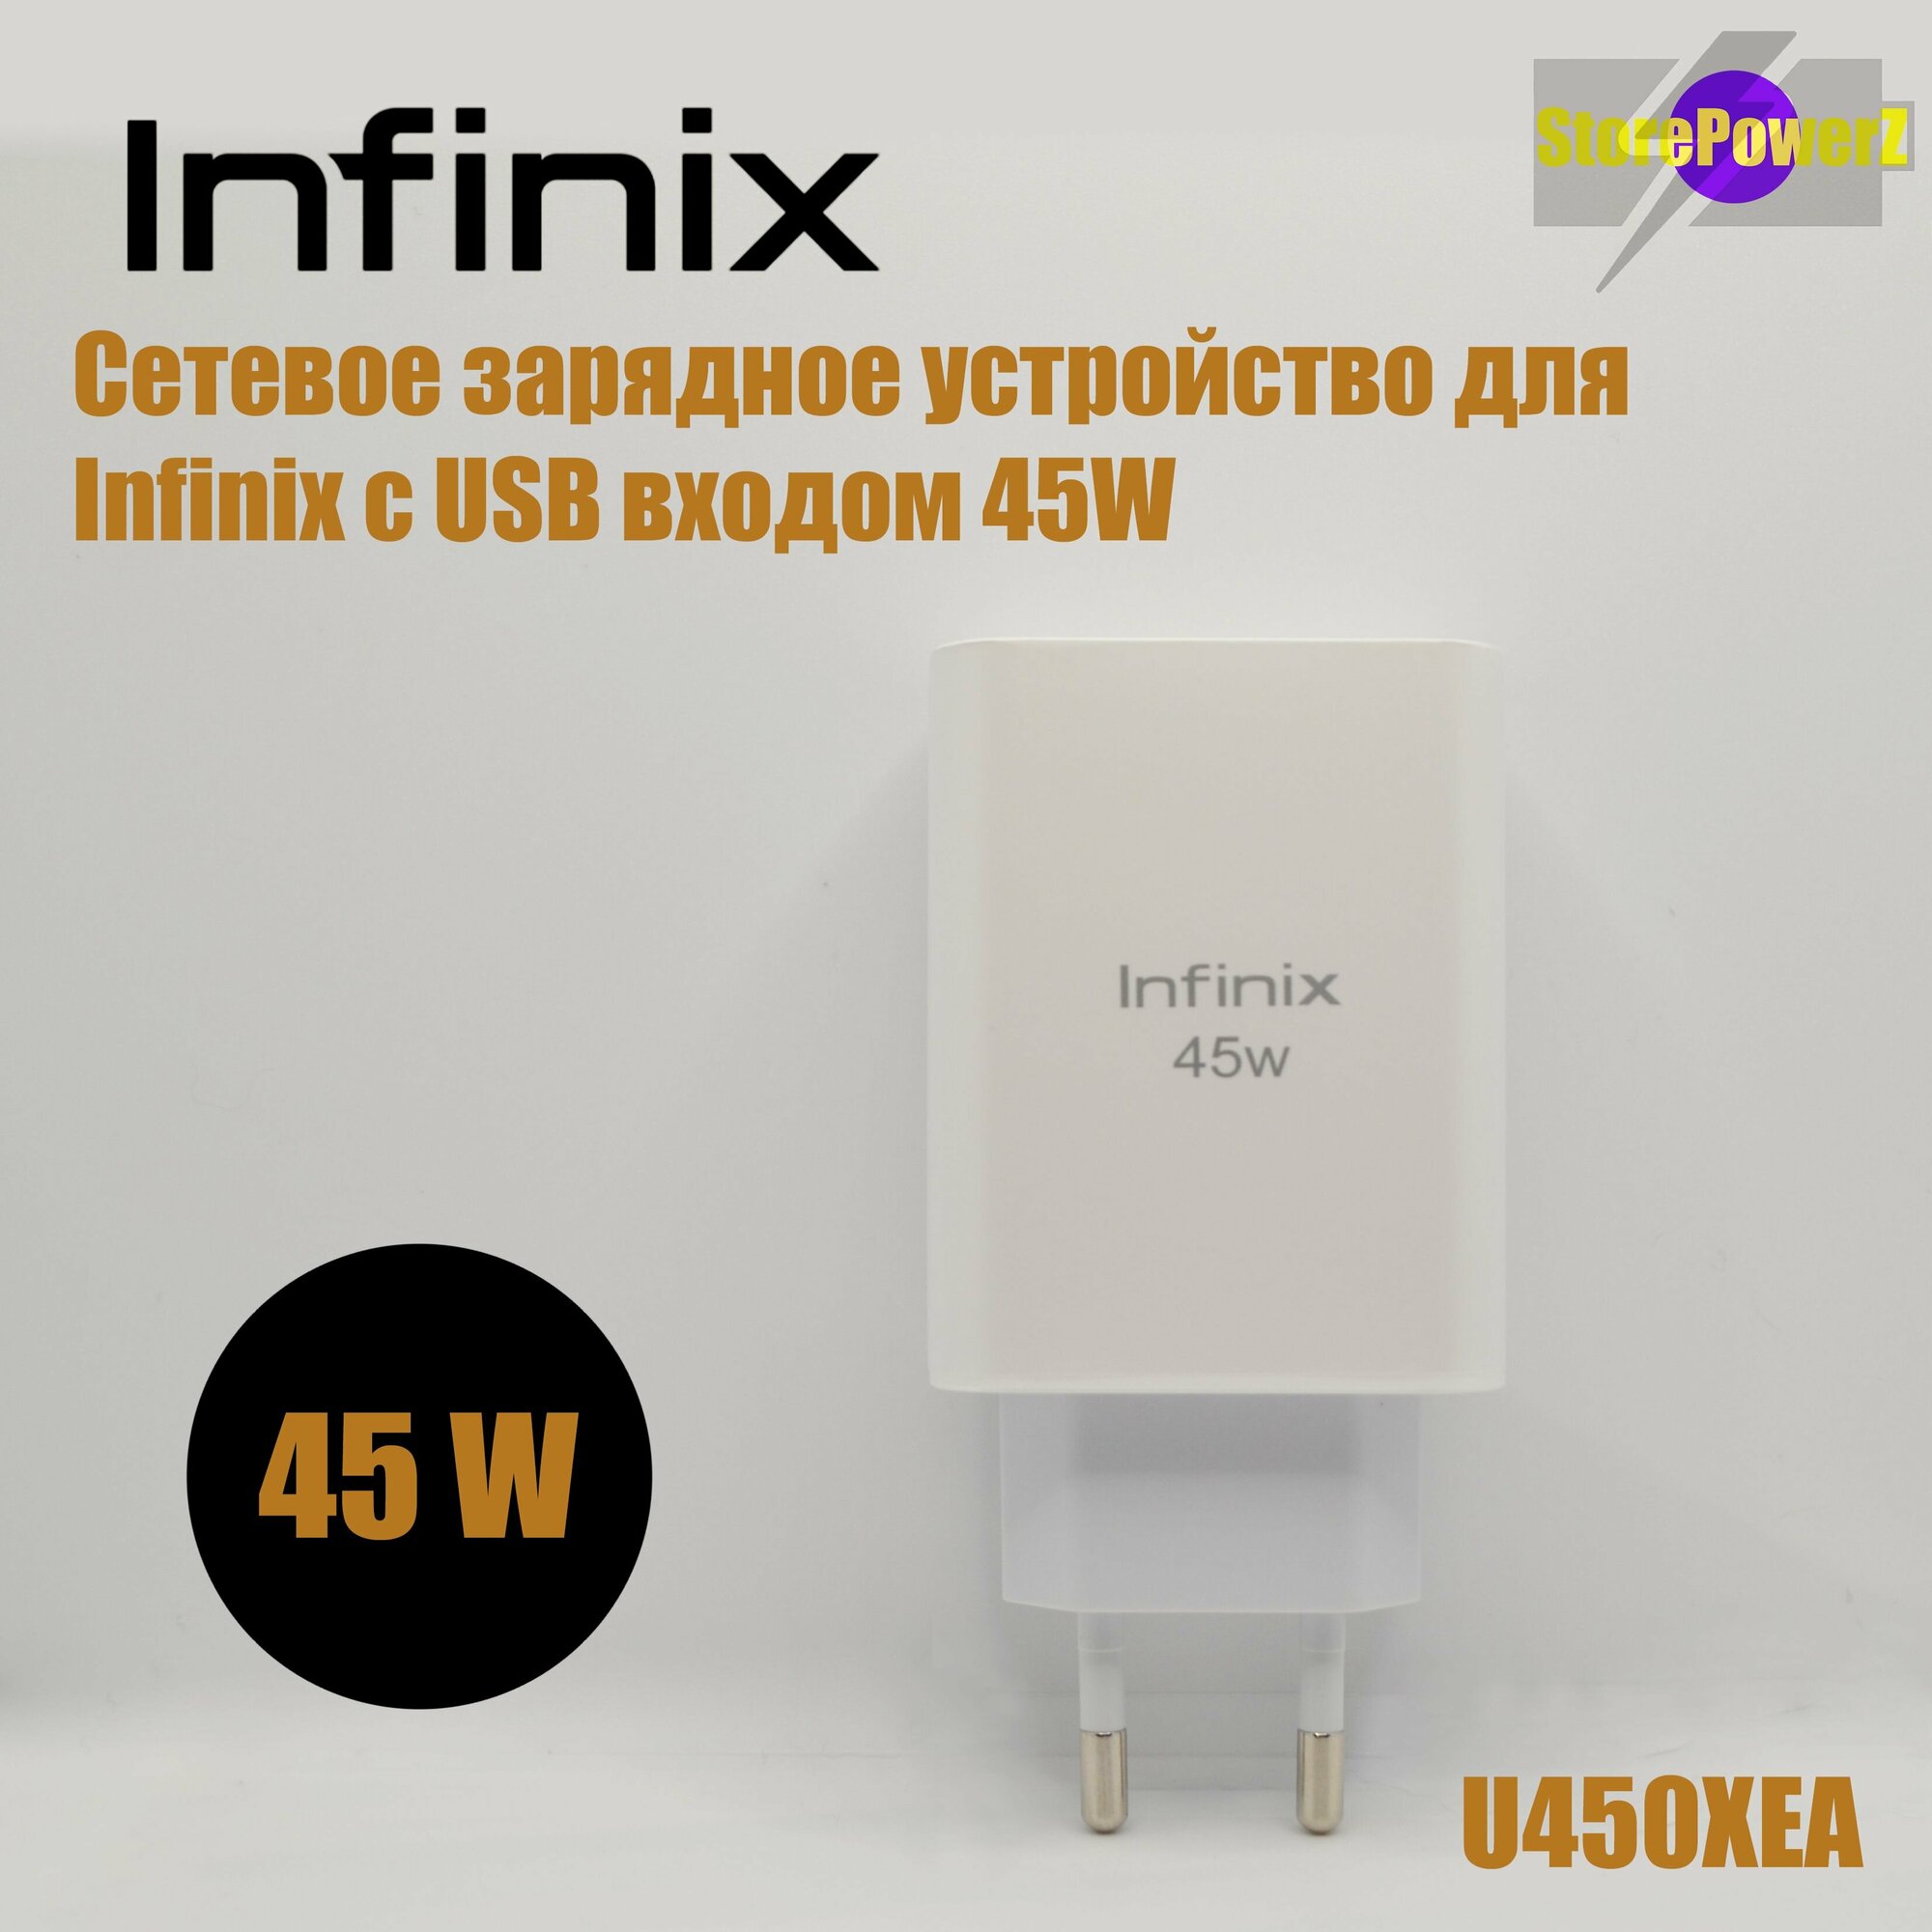 Устройство сетевое зарядное с USB входом для Infinix 45W (U450XEA) цвет: White